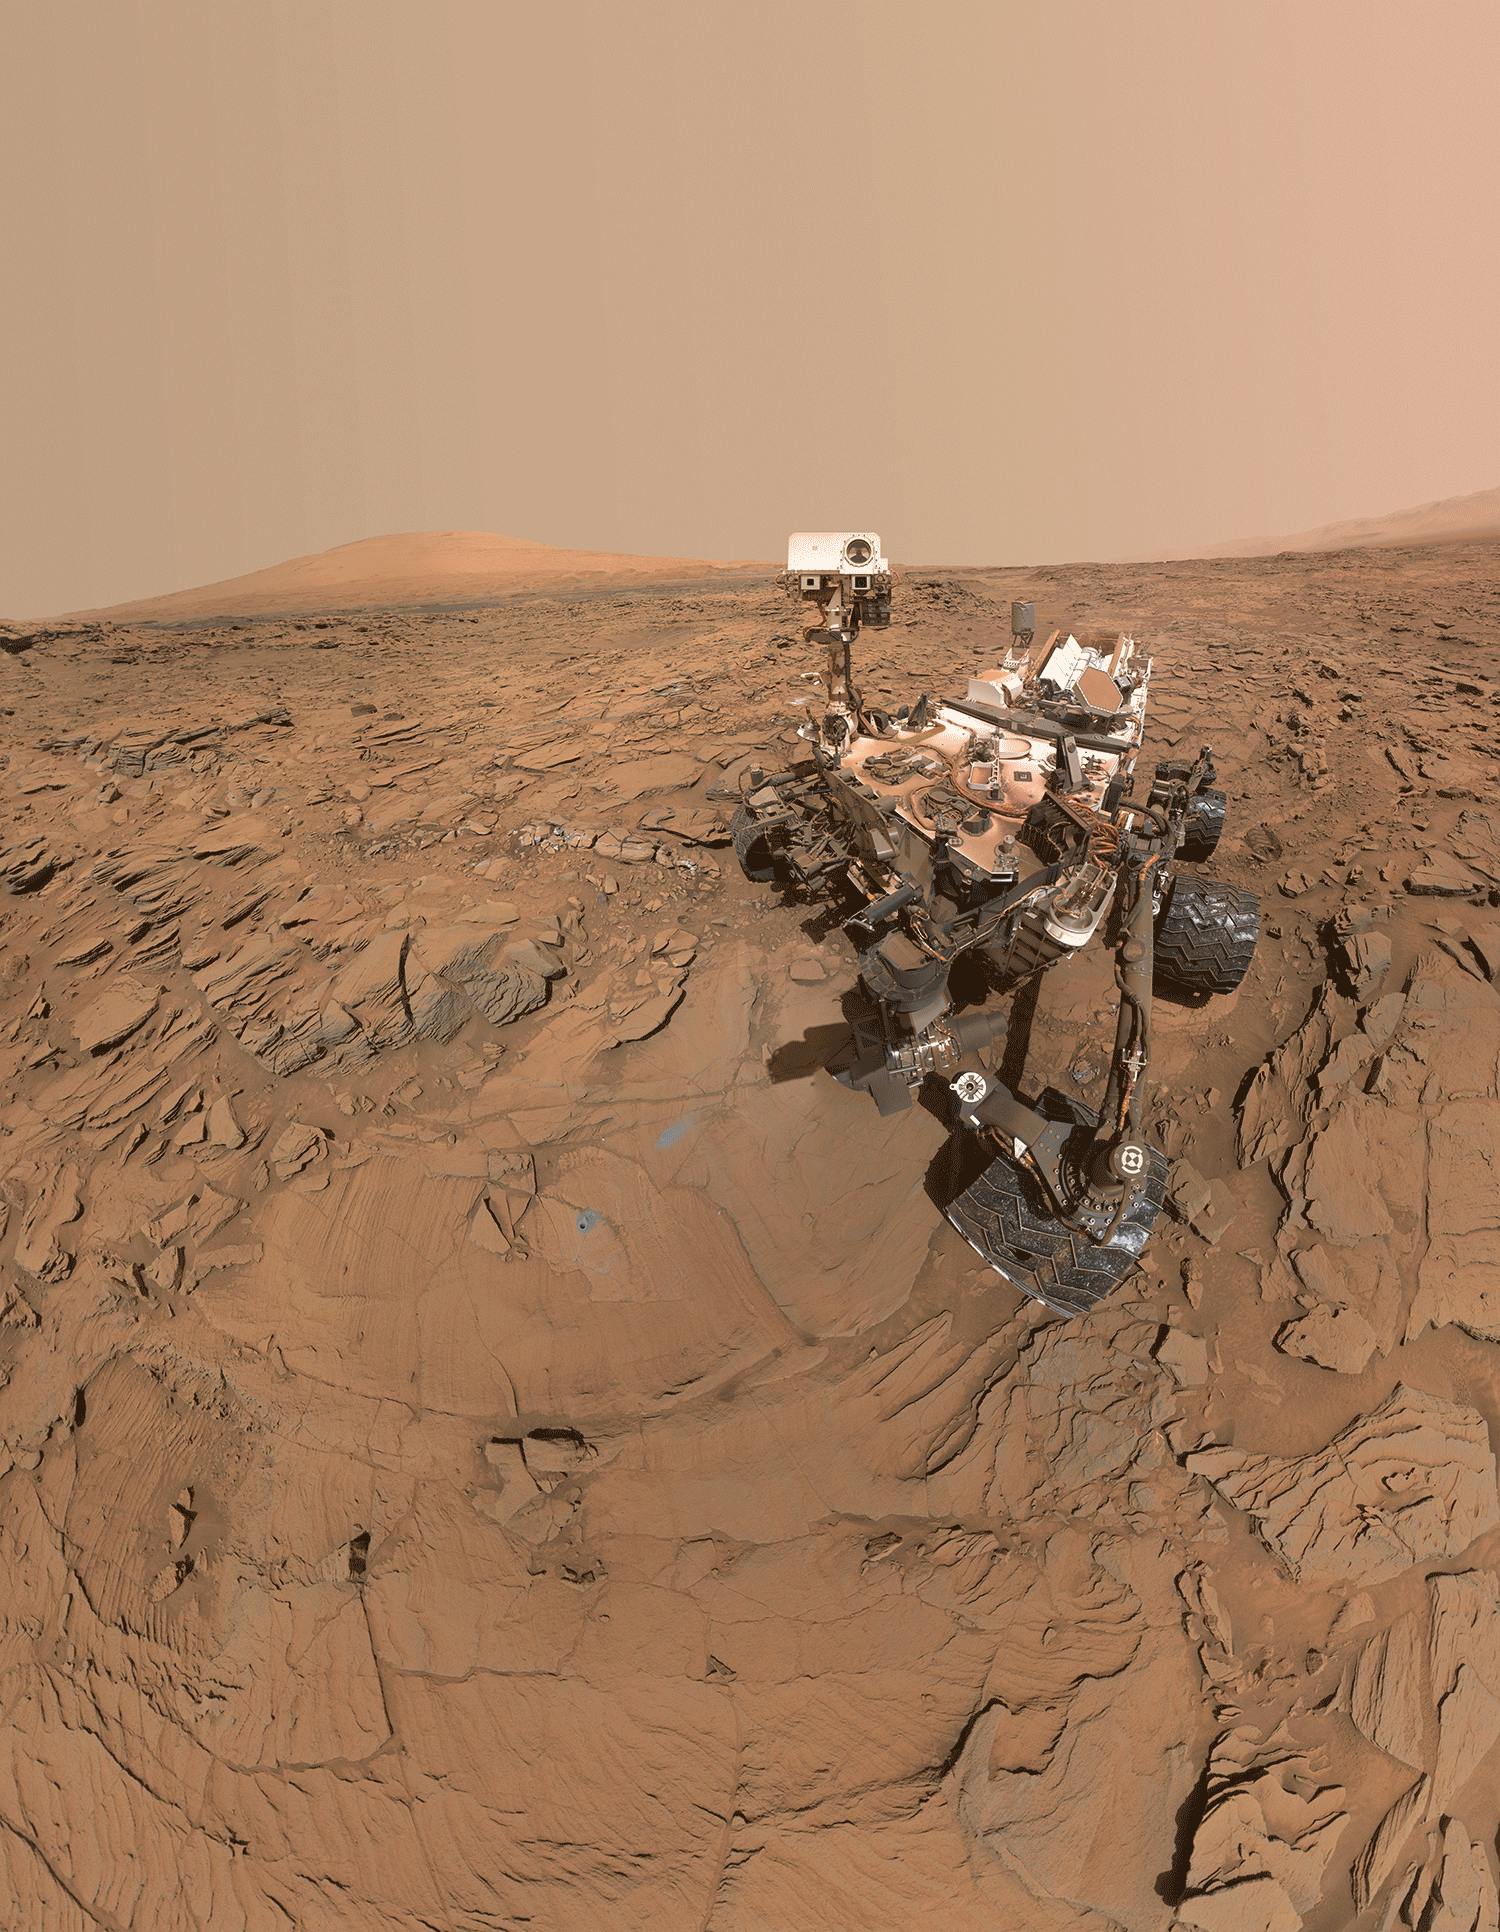 El autorretrato del rover Curiosity de la NASA en Marte muestra el vehículo en la superficie desértica de Marte. La “cabeza” de la cámara del rover de seis ruedas está girada para mirar al espectador. En el suelo, frente al rover, hay un tubo de muestras de metal, sellado, del tamaño de un marcador de pizarras. Las huellas de las ruedas del rover que dejó en la superficie polvorienta trazan un camino en zigzag hacia varios otros sitios donde este ha colocado tubos similares en la superficie de esta zona plana. A lo lejos, las características geográficas de una colina y una meseta marcan el horizonte.